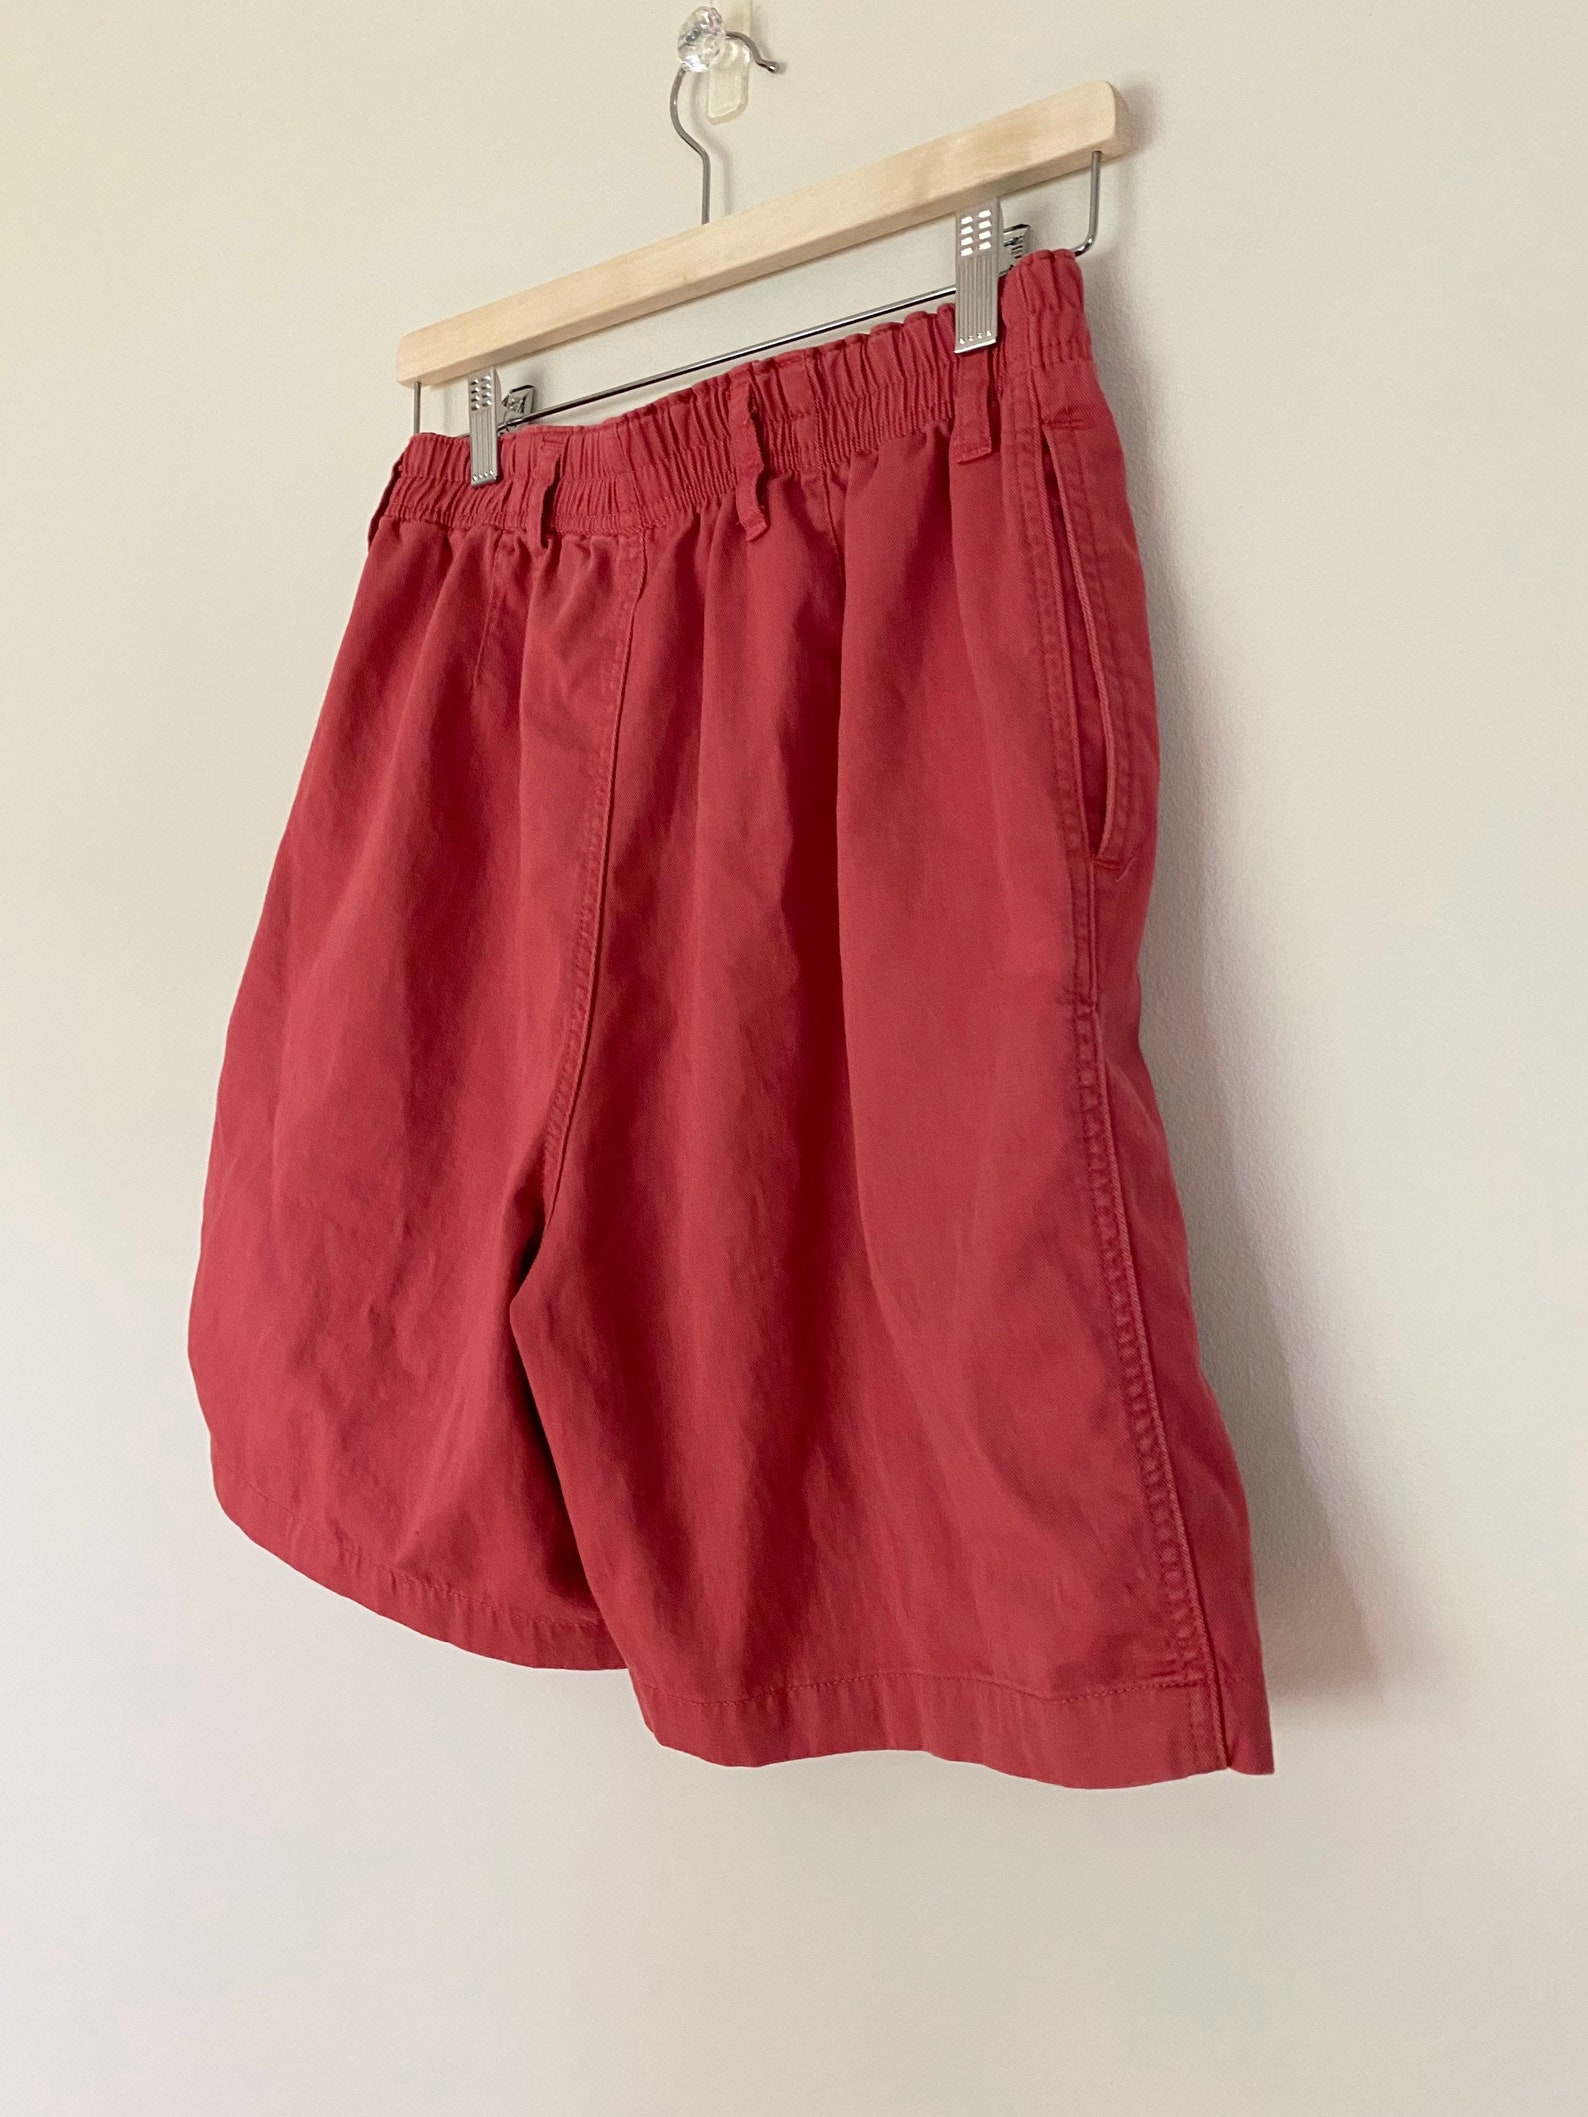 Vintage Essential Cottage Core Cotton Shorts talla M cintura | Etsy